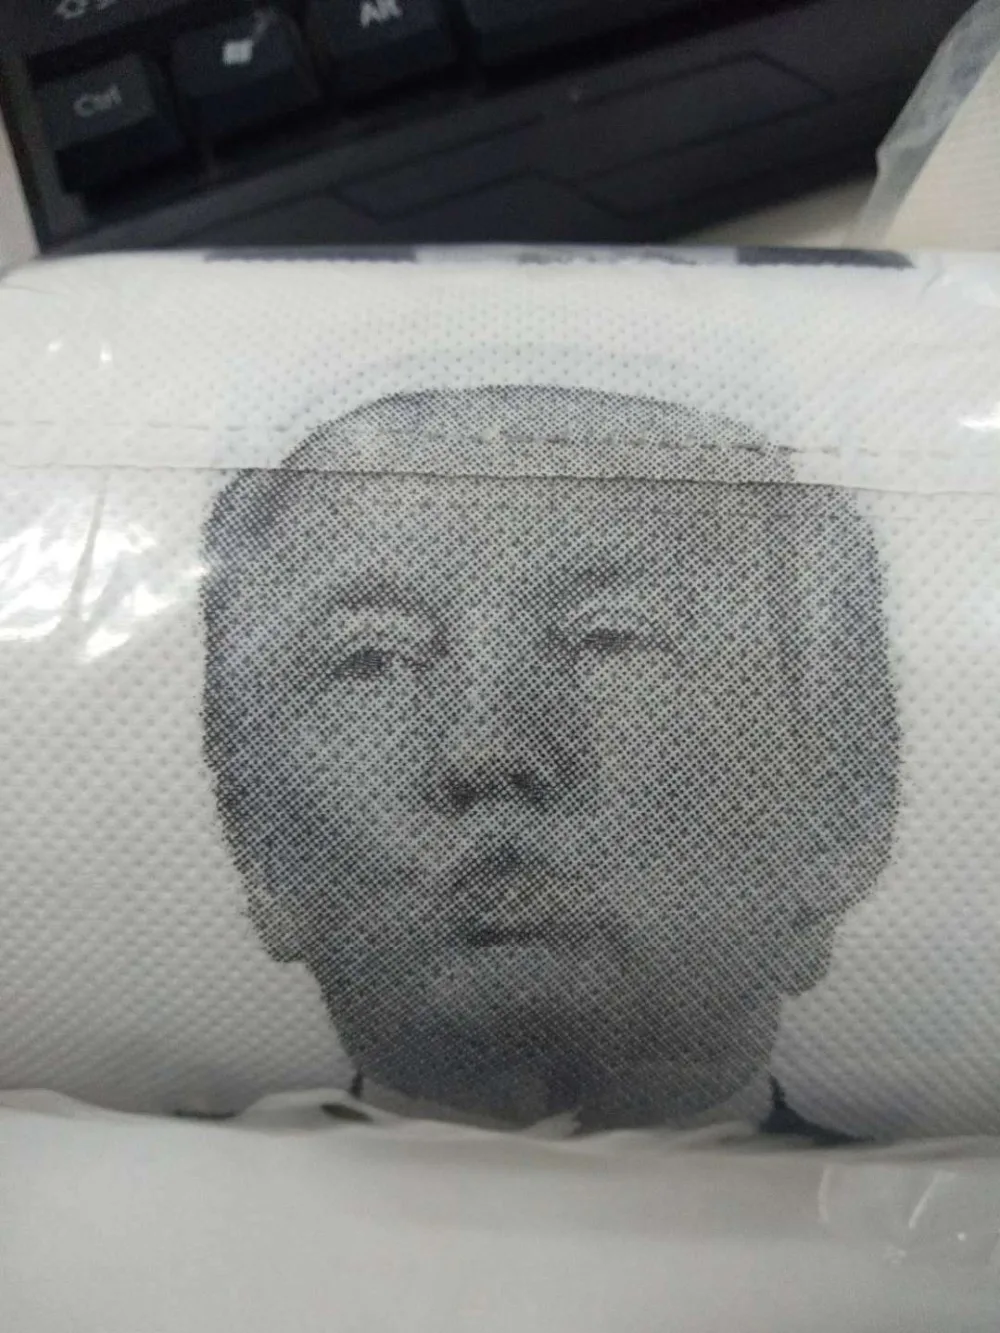 Дональд Трамп набор туалетных принадлежностей держатели для туалетной щетки с Трамп бумага подарок шалость шутка ванная комната чистящие аксессуары пластик